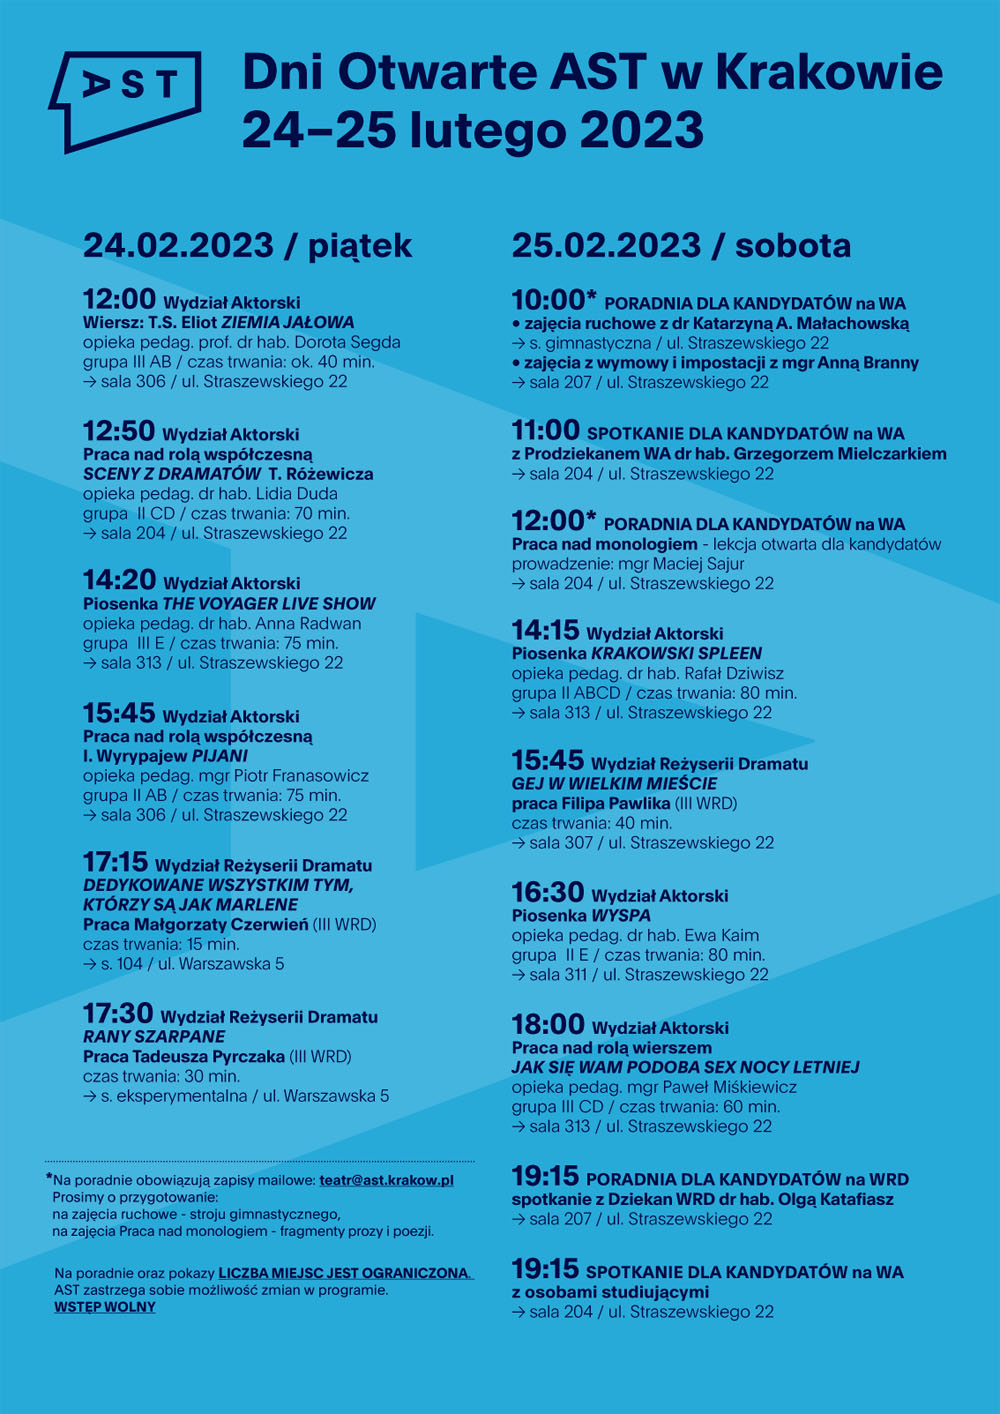 Plakat Dni Otwartych AST. Na niebieskim tle treść programu wydarzenia. W lewym górnym rogu logo Akademii Sztuk Teatralnych w Krakowie